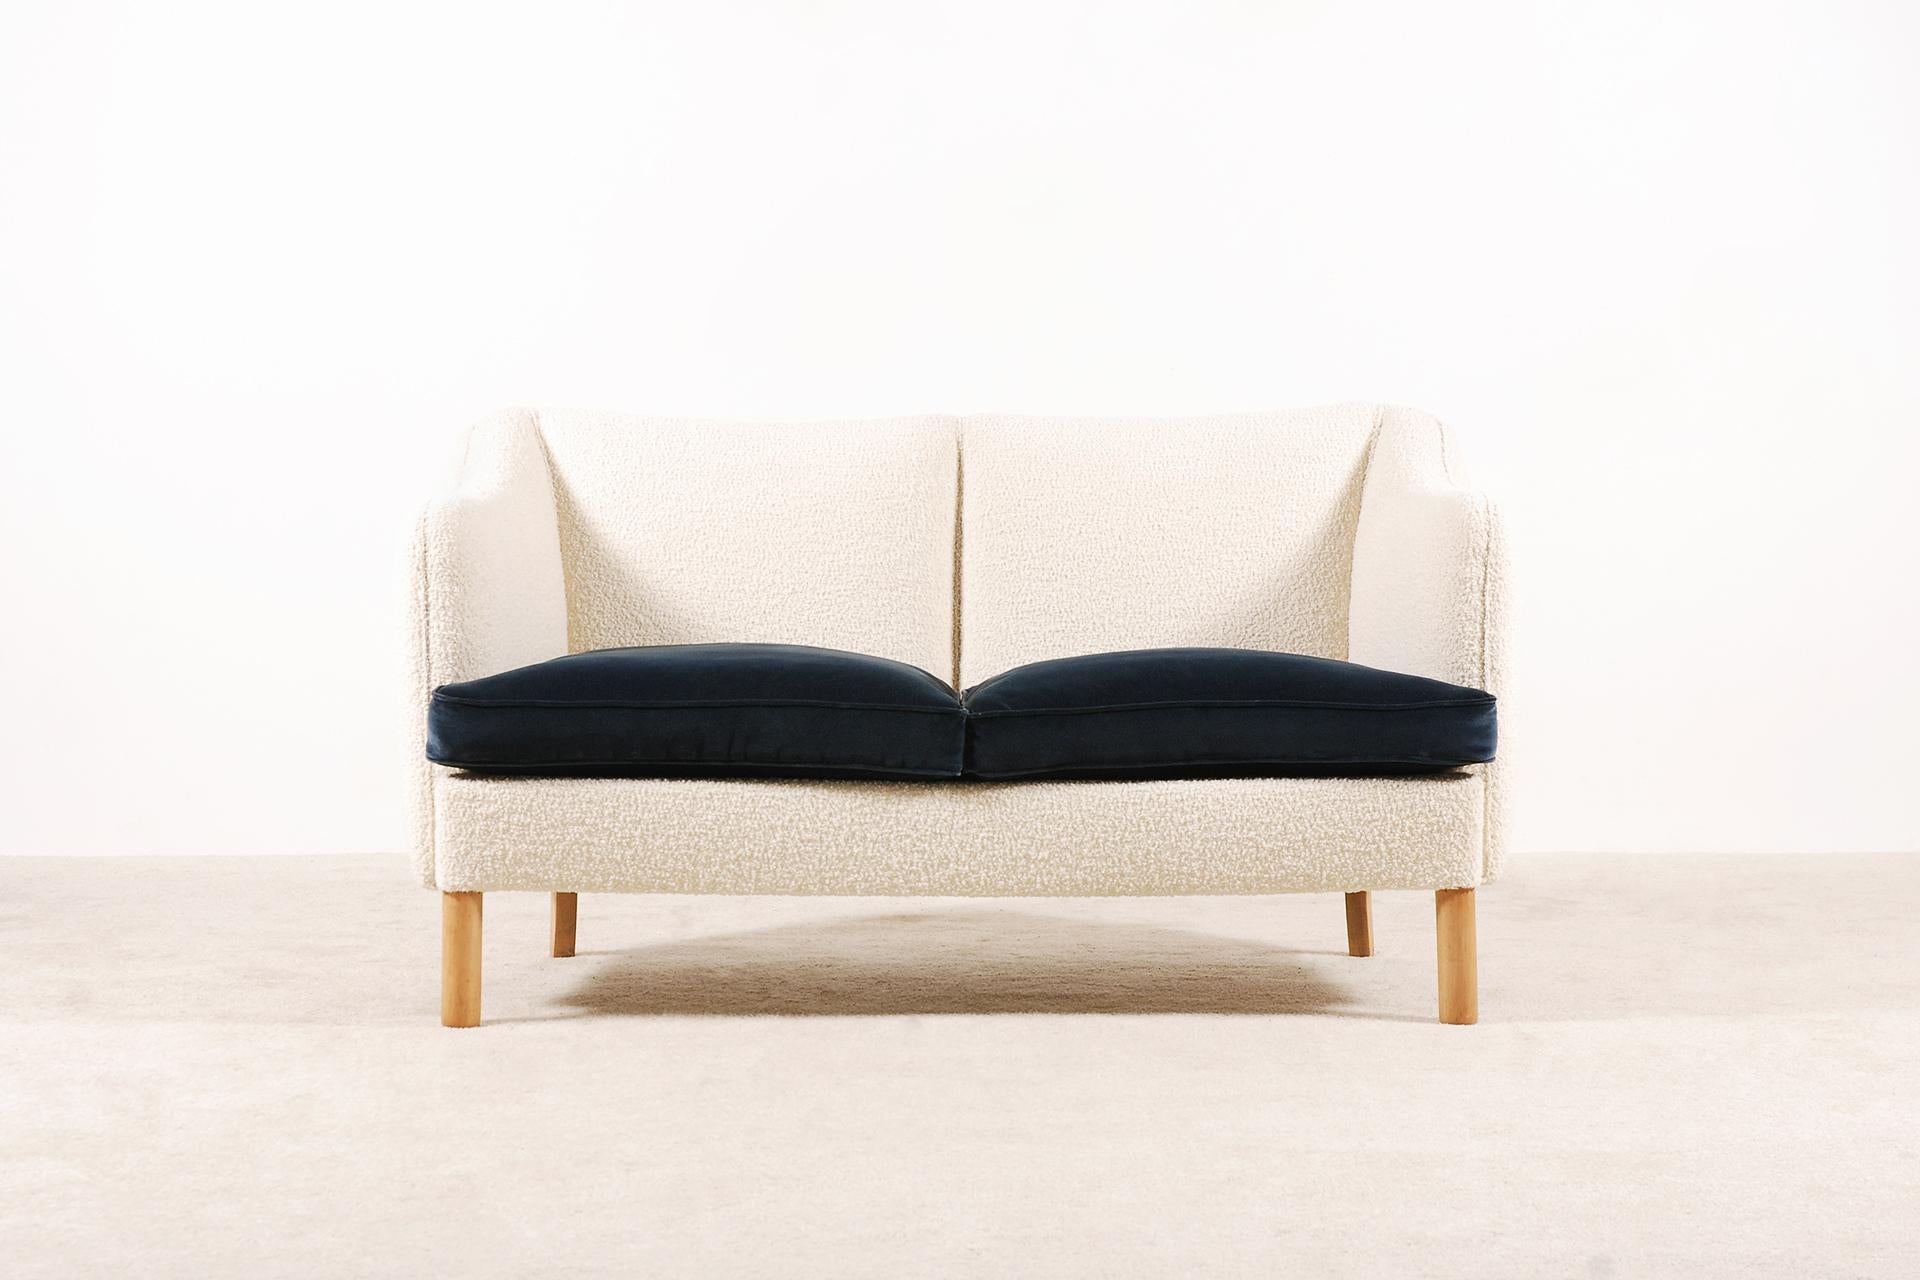 Schönes zweisitziges geschwungenes Sofa aus den 1950er Jahren.
Wunderschöne Form und Kurven. Sehr bequemer Sitz mit zwei Federkissen, bezogen mit blauem Kvadrat-Samt.

Perfekter Zustand, Originalstück aus den 1950er Jahren, das von den besten